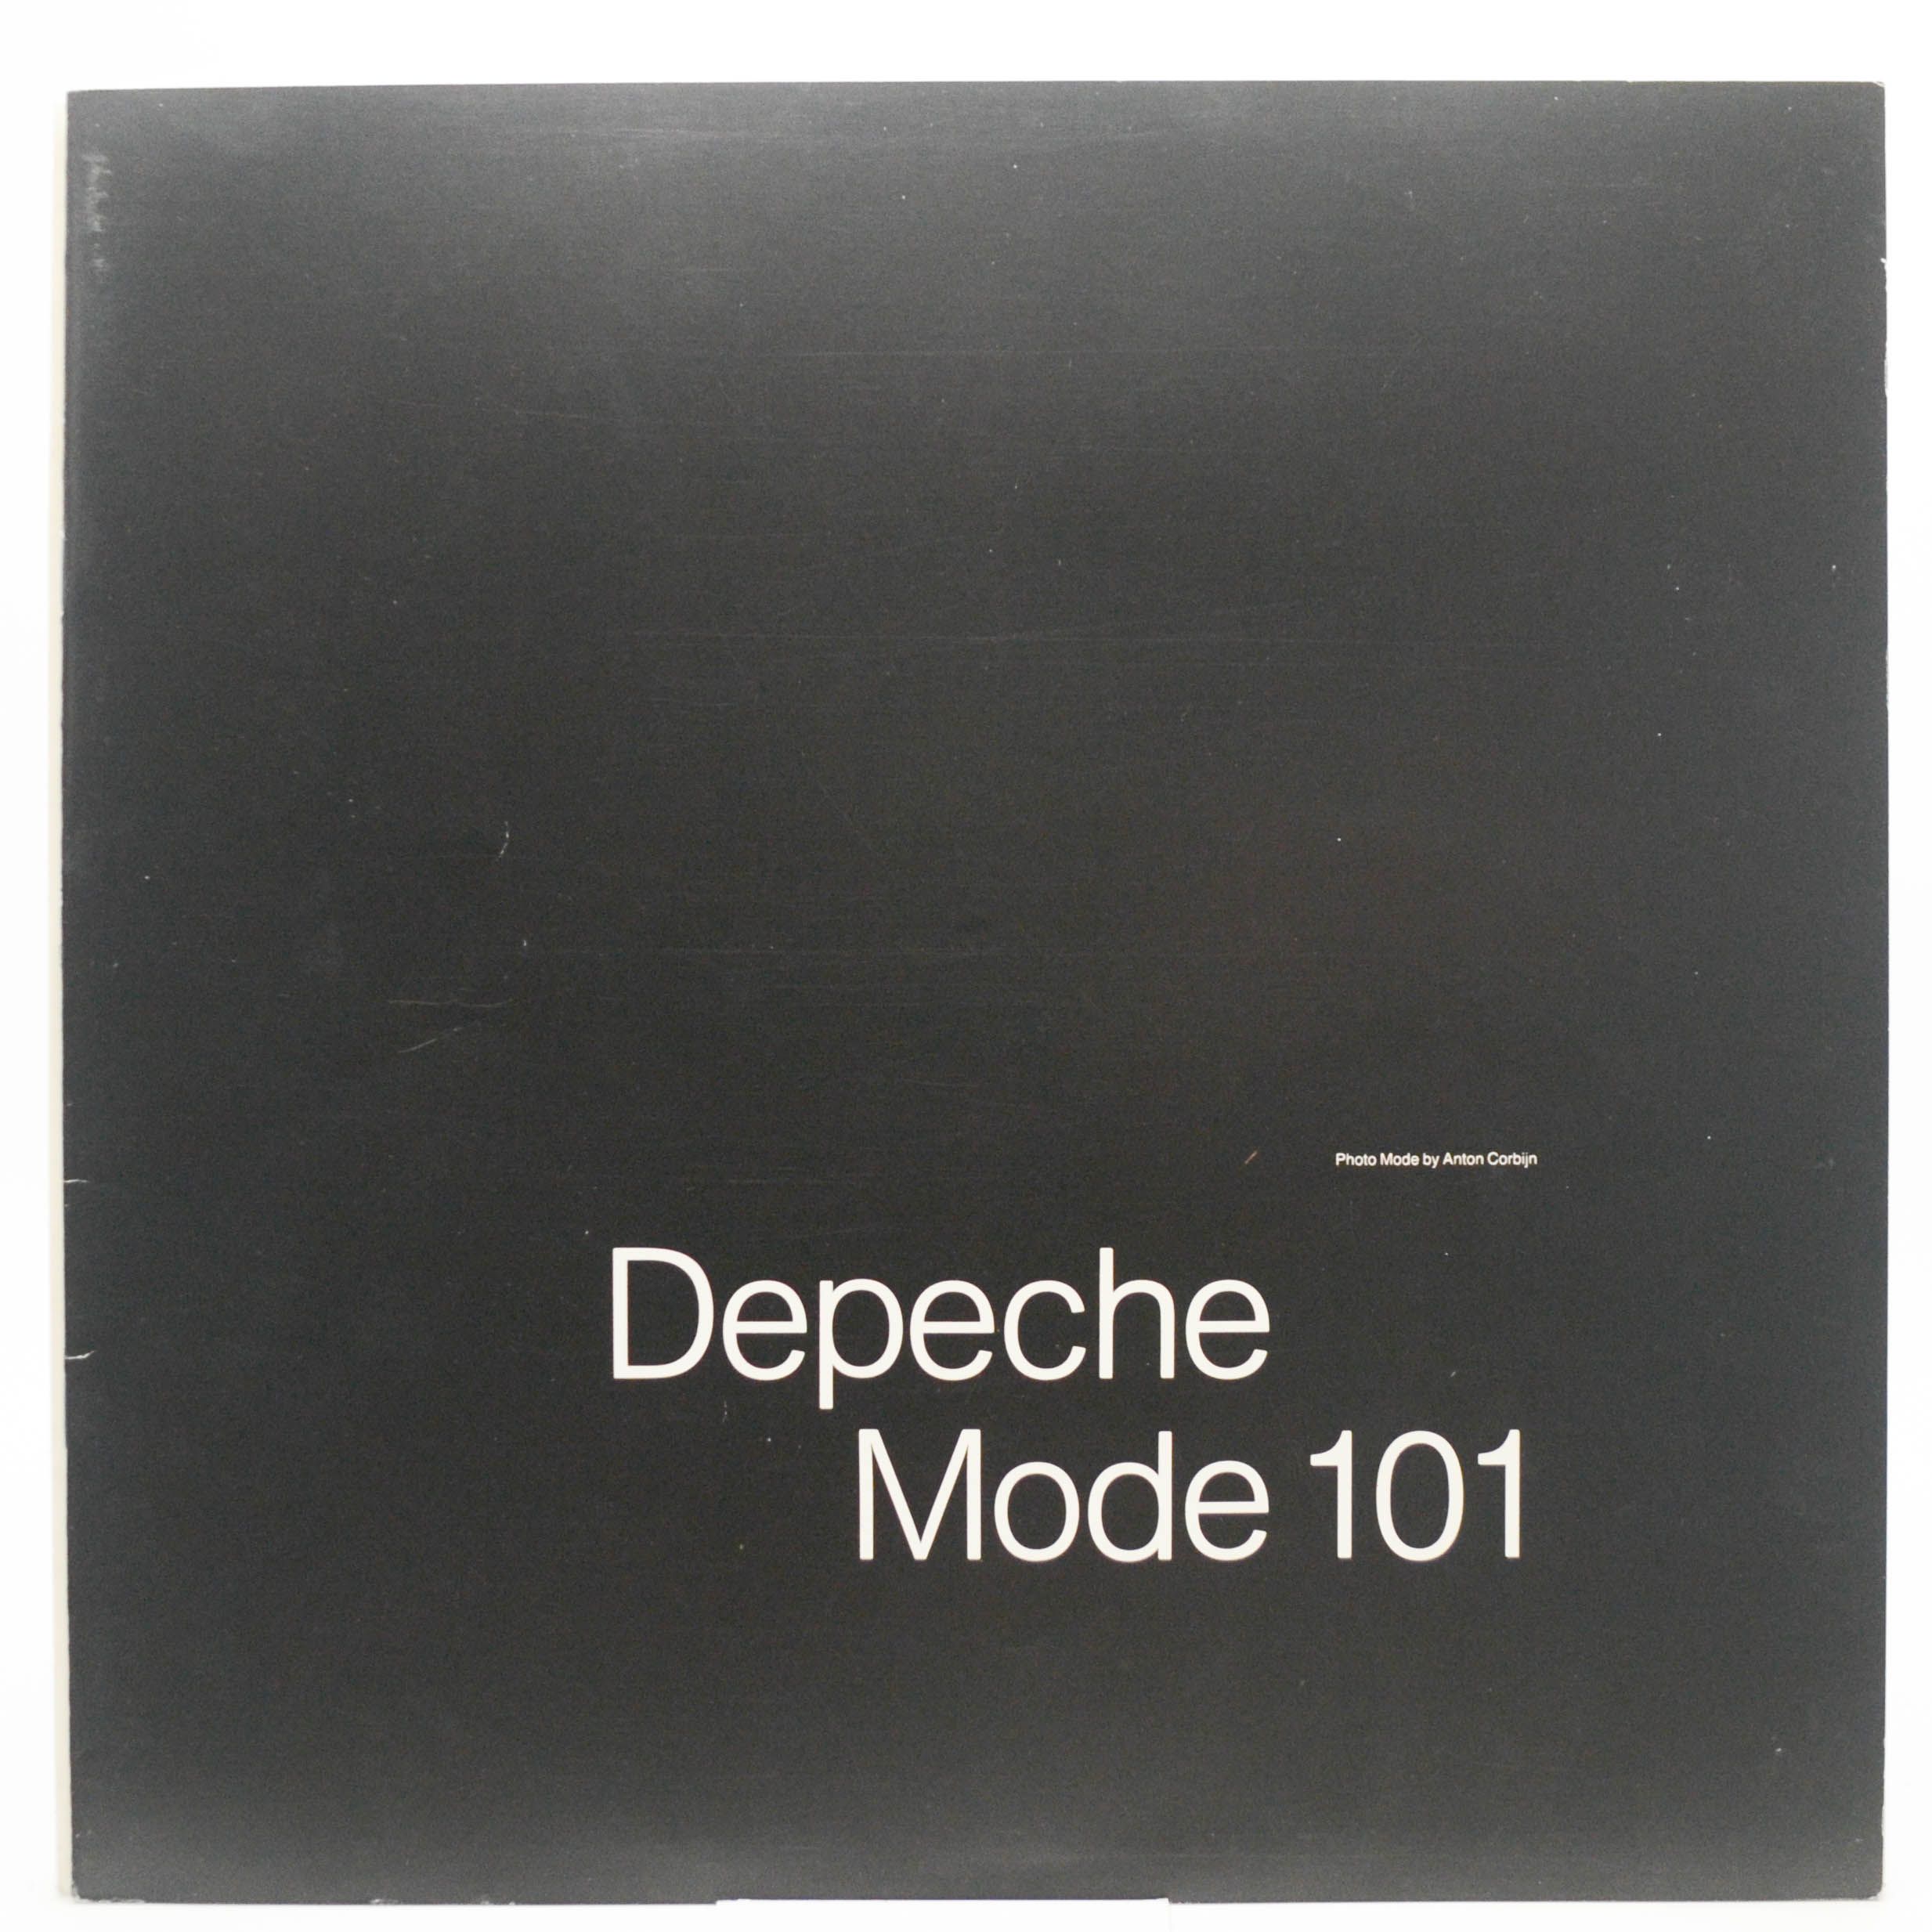 Depeche Mode — 101 (2LP), 1989